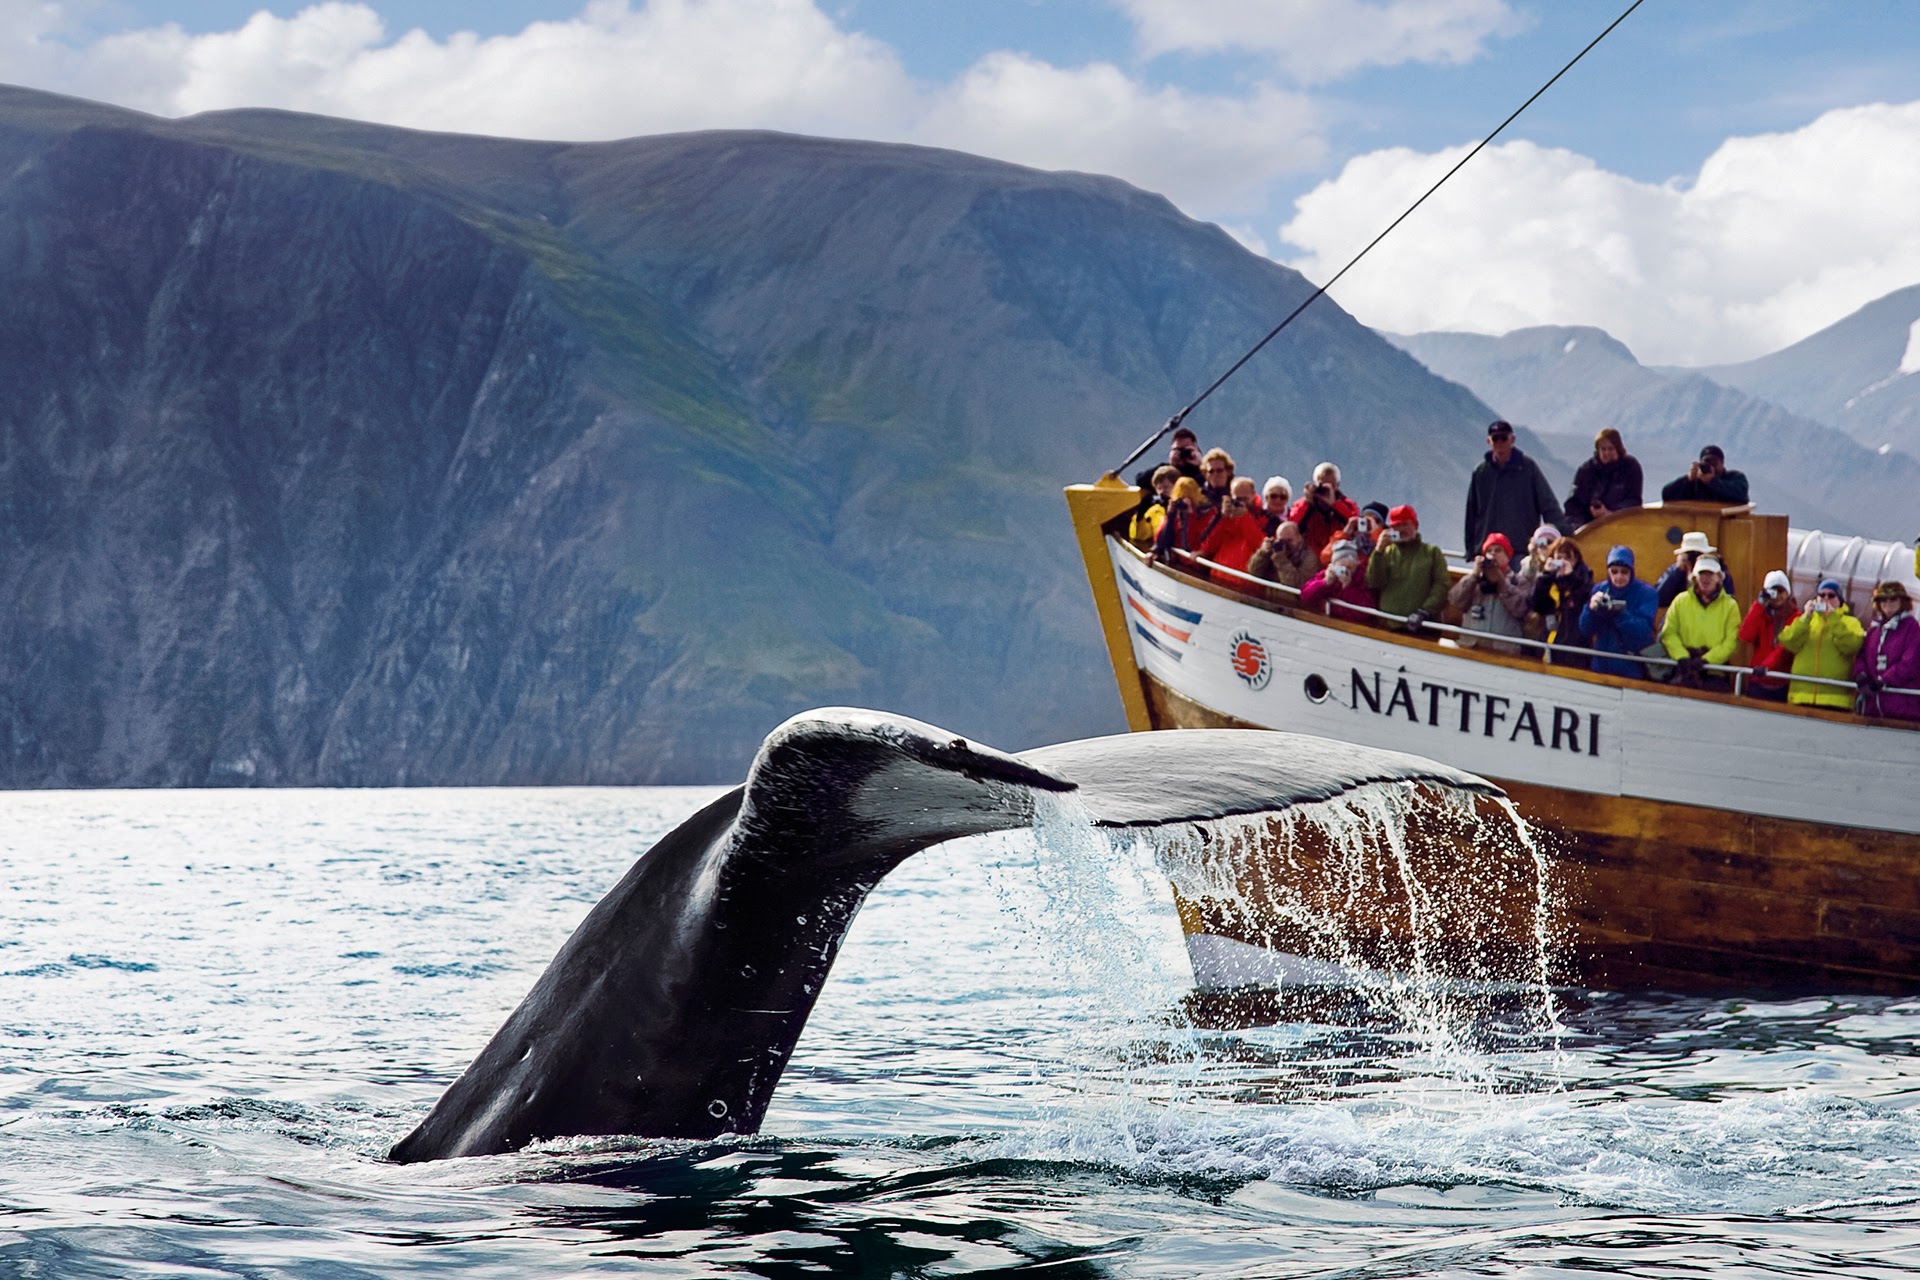 Tour độc đáo ngắm cá voi bảo vệ môi trường ở Iceland - 6